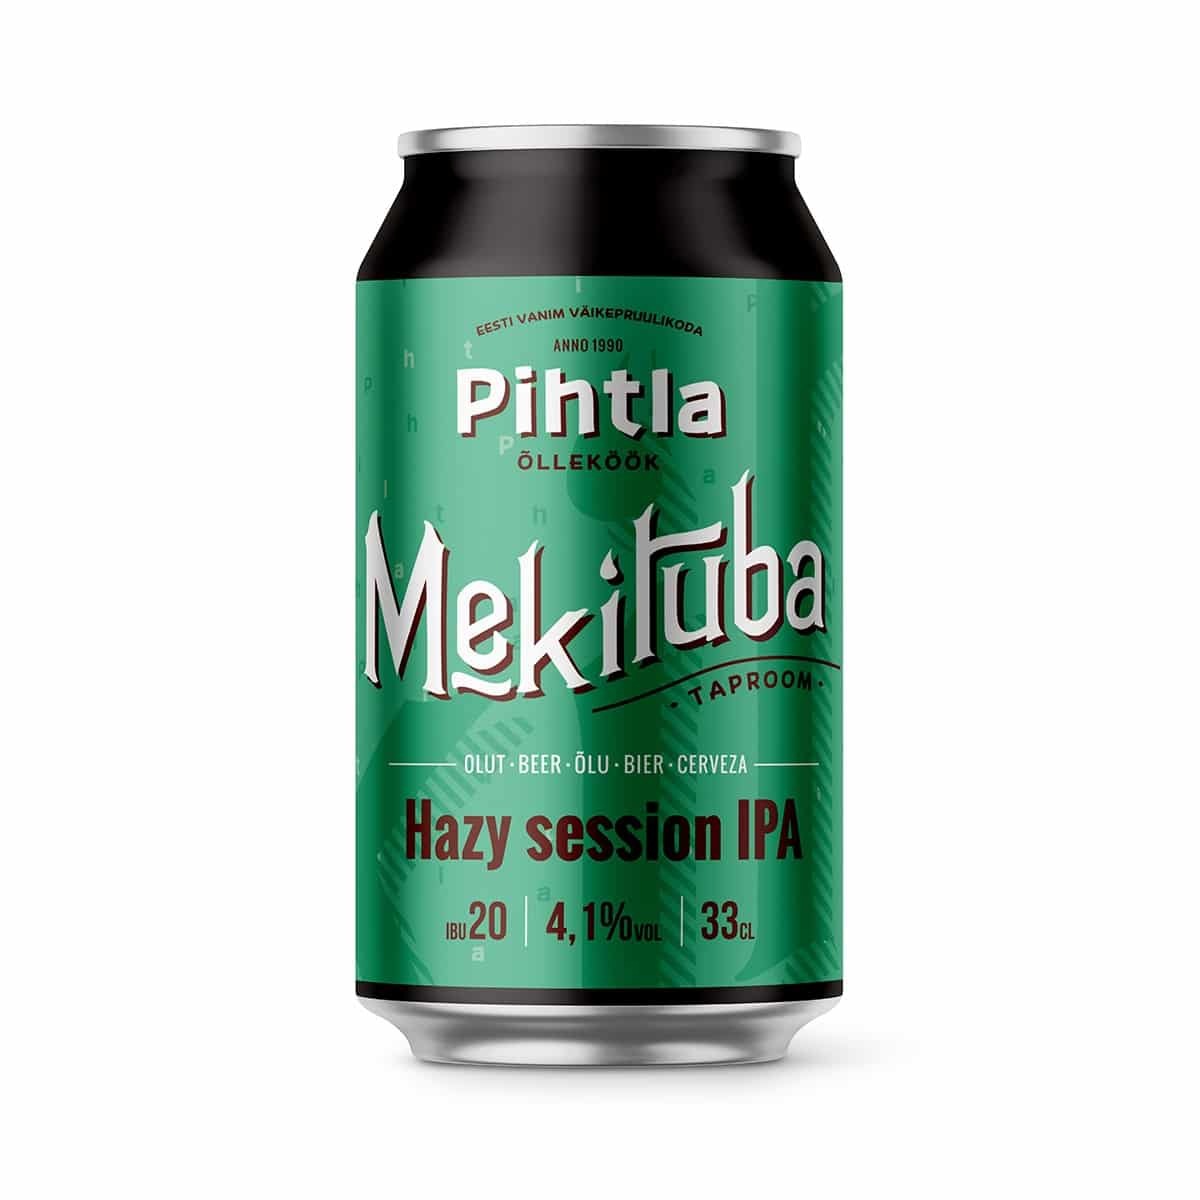 Pihtla käsitööõlu “Mekituba” Hazy session IPA 330 ml purk 4,1% (12)